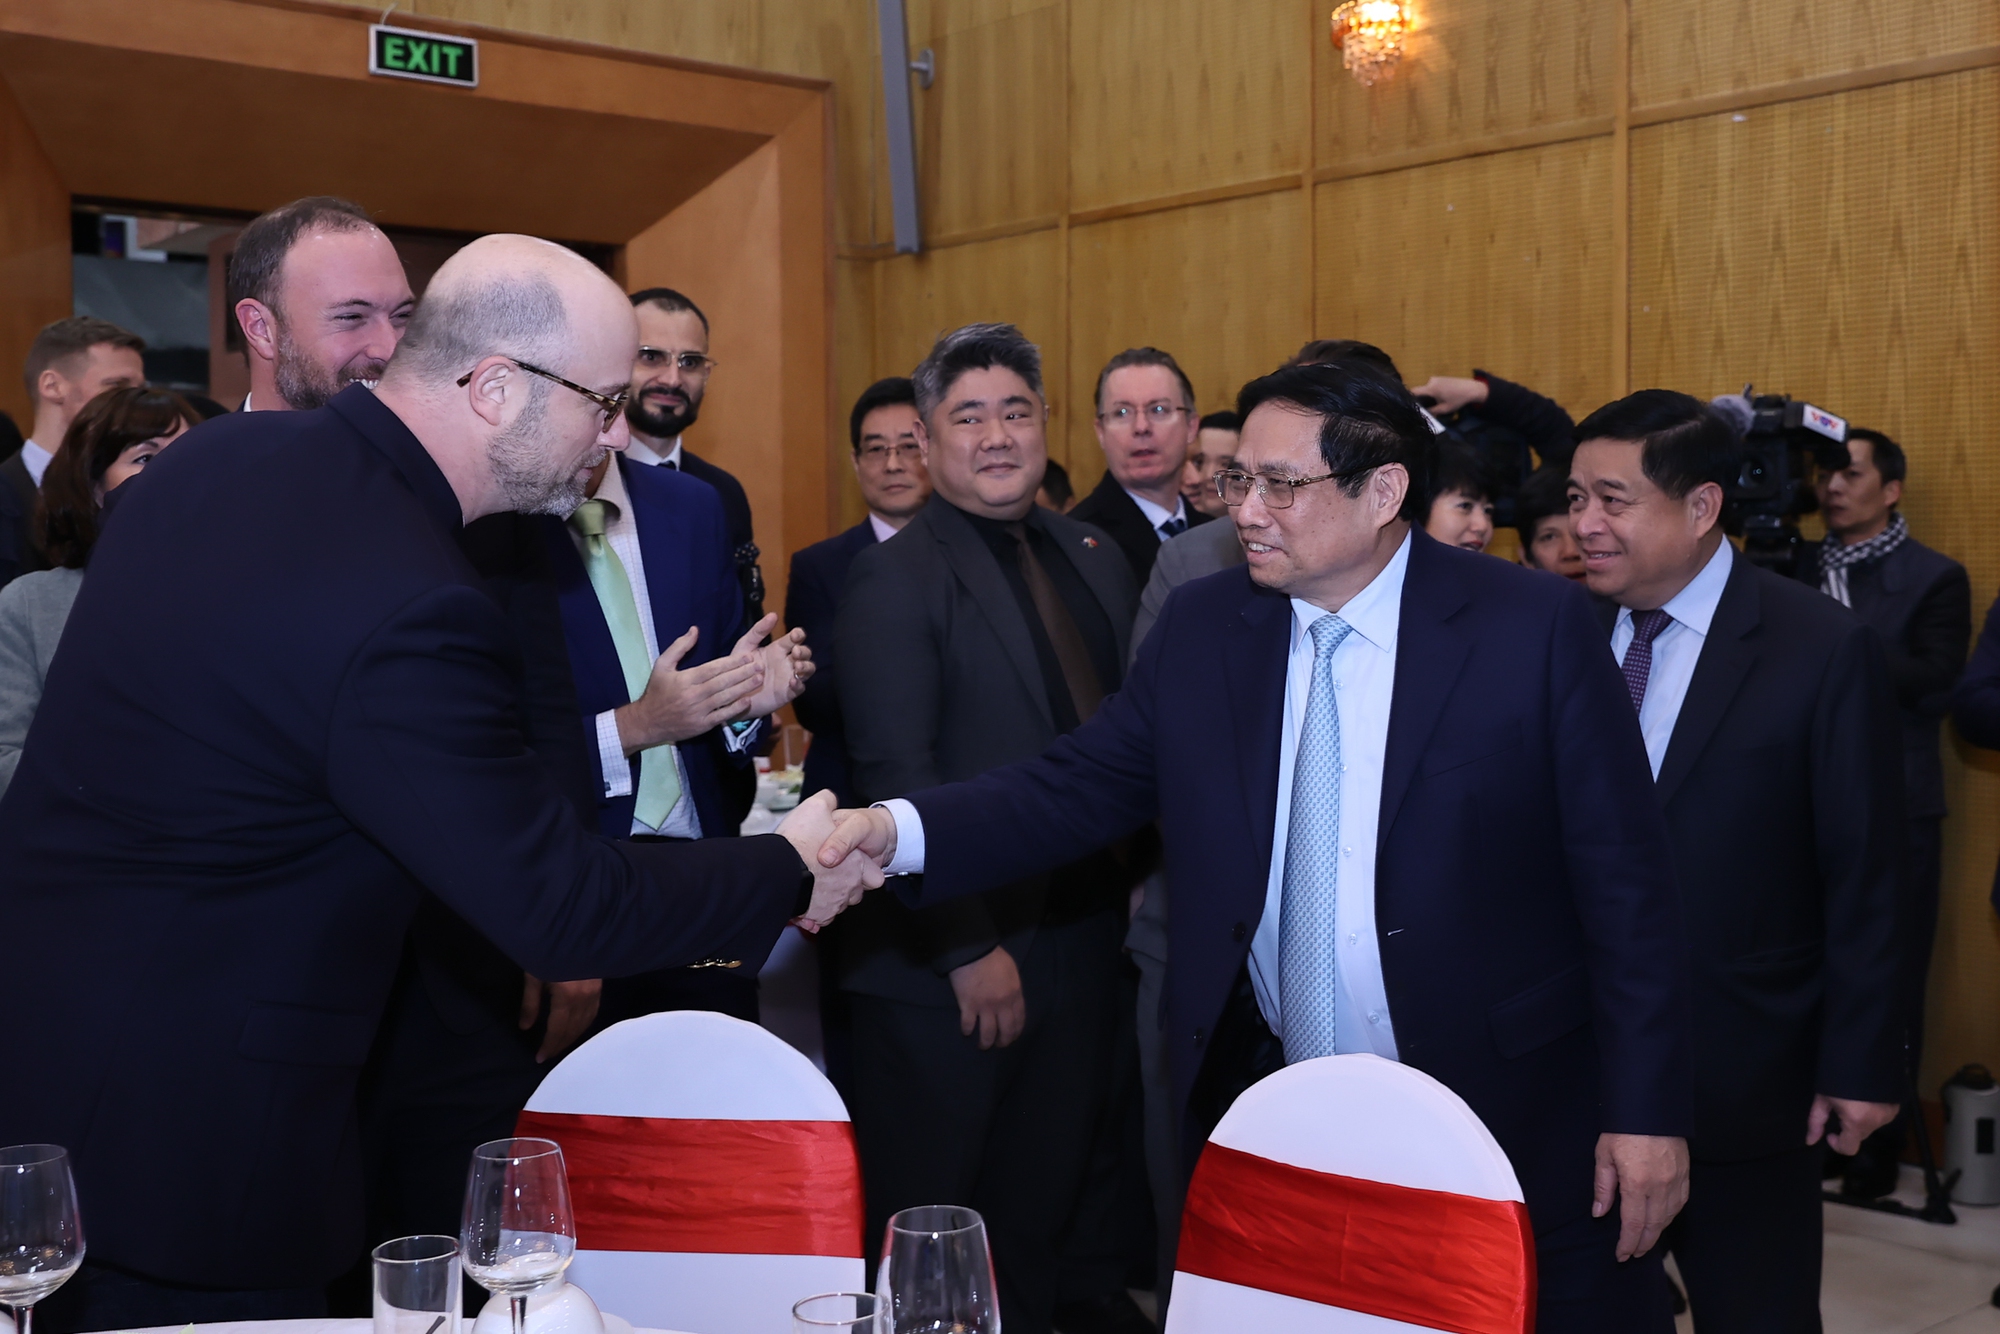 Thủ tướng gặp mặt các nhà đầu tư, nhà tài trợ, đề nghị cùng Việt Nam đoàn kết, hành động